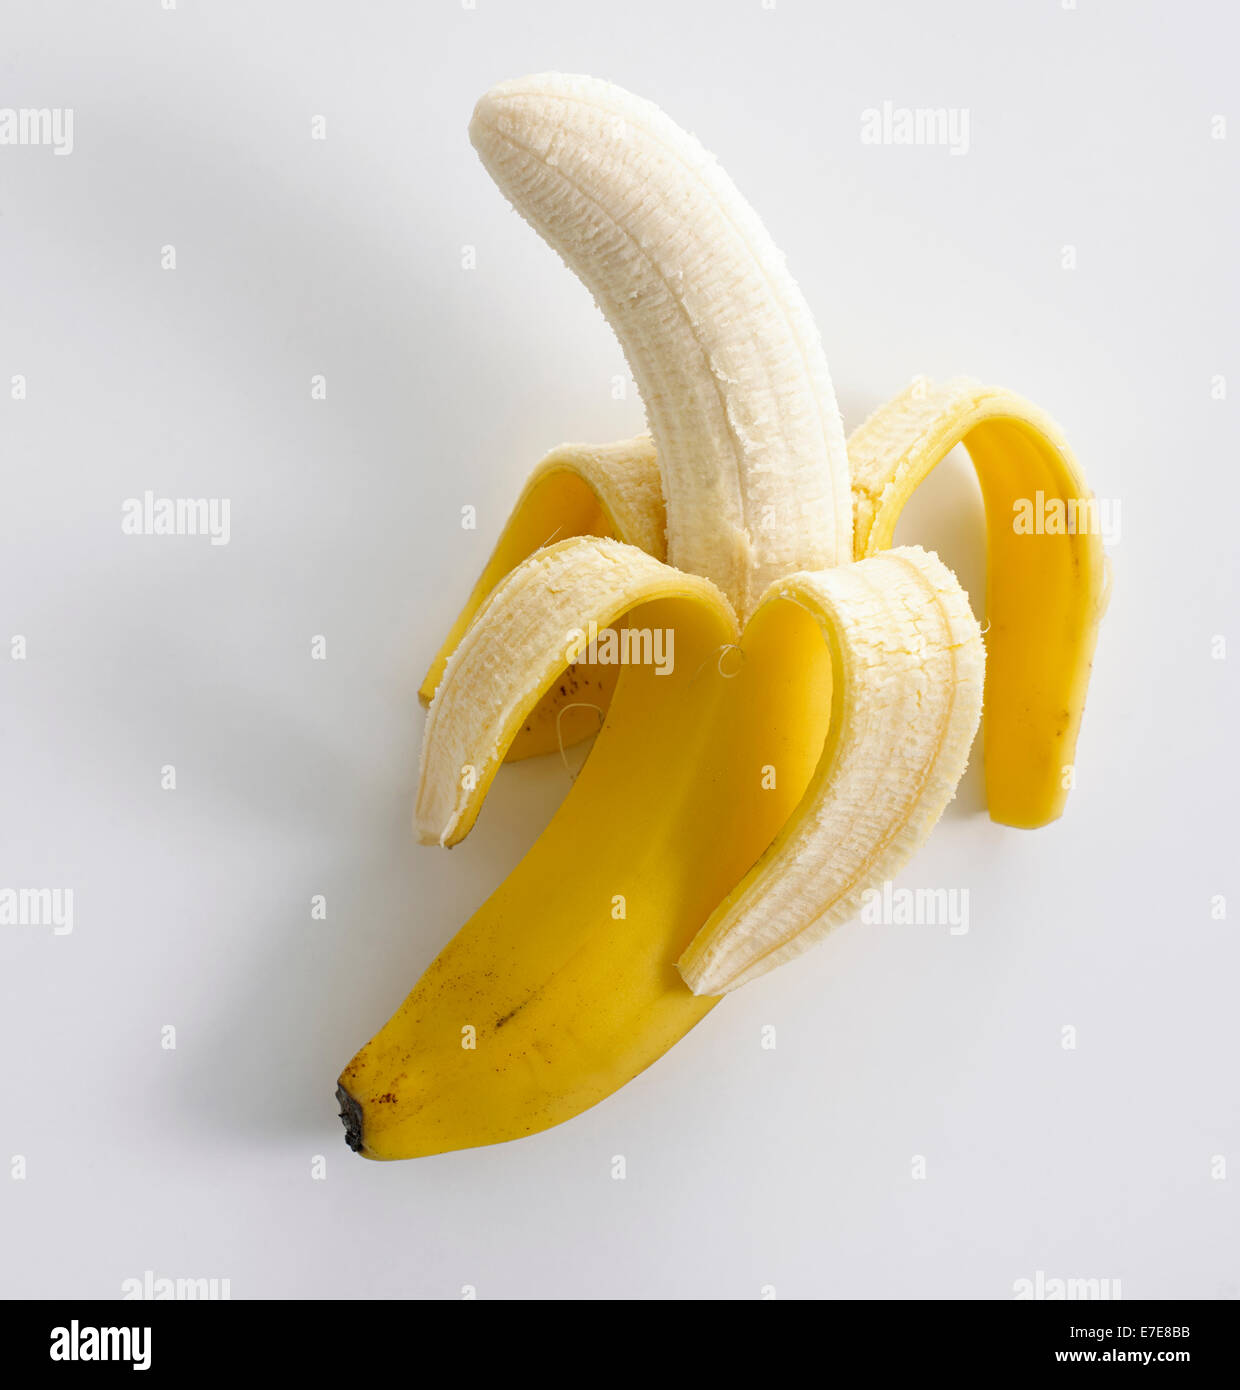 Peeled banana Stock Photo